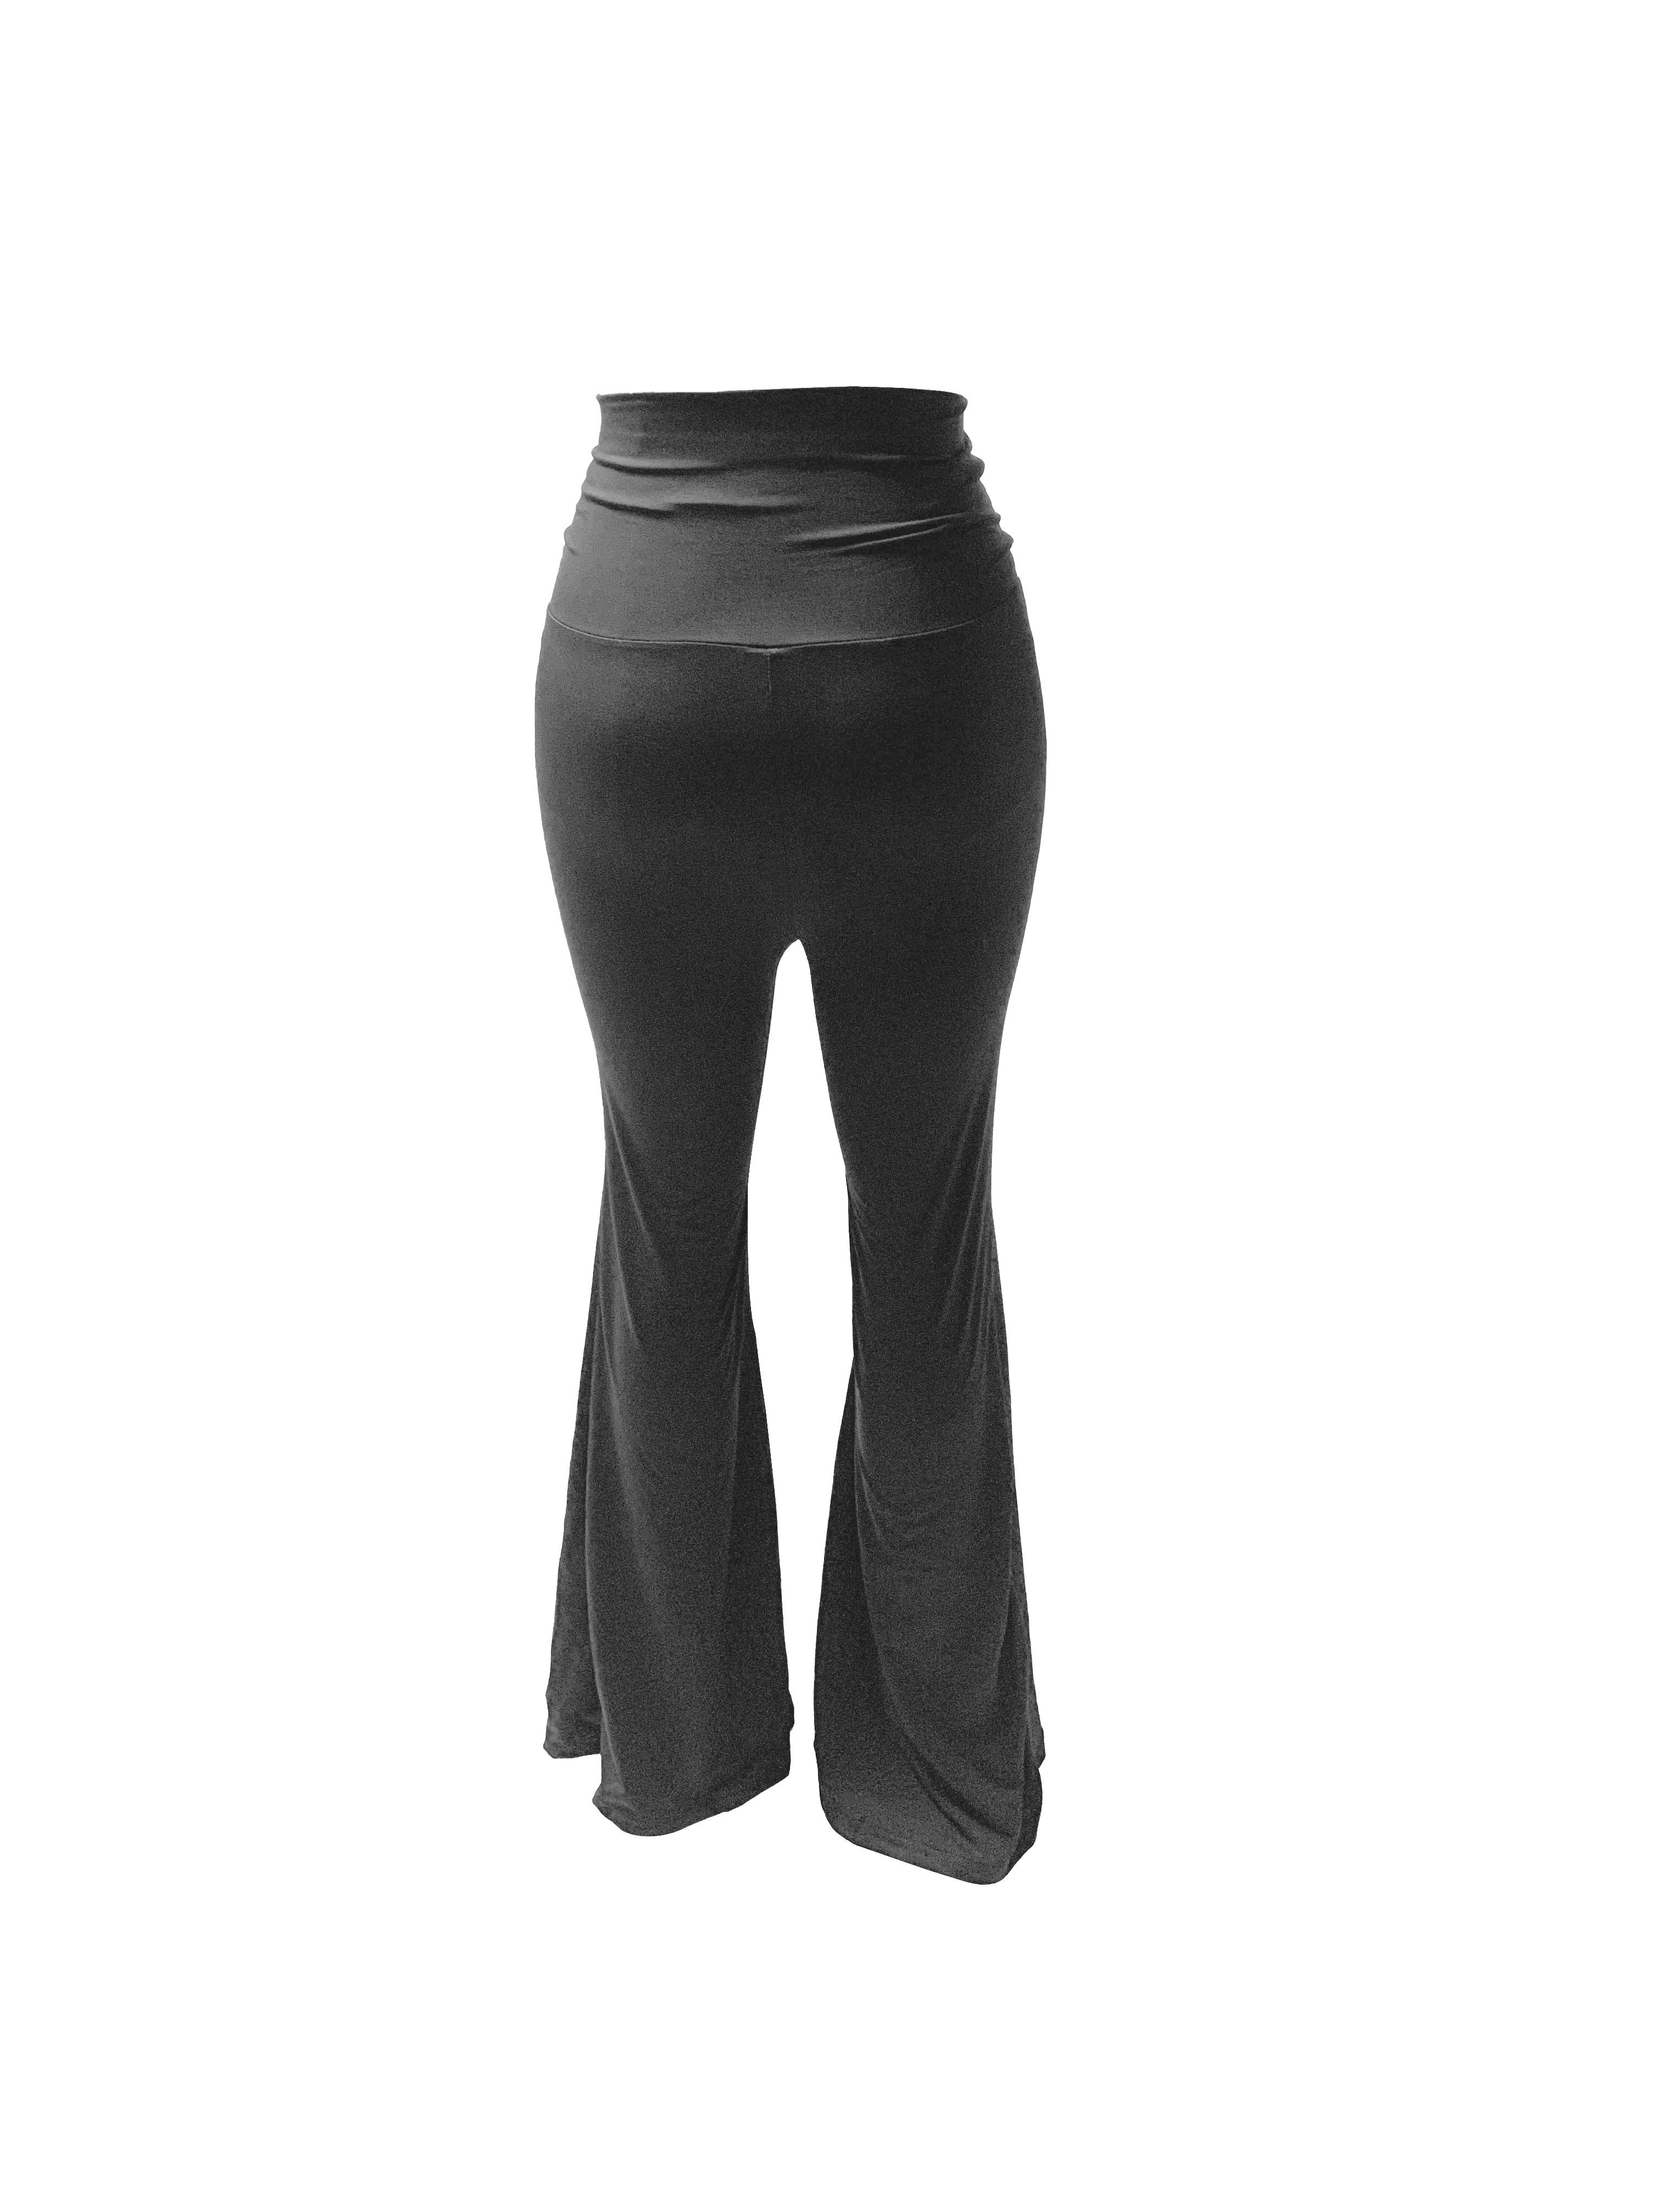 Sleek black athletic leggings/yoga pants from 90 - Depop